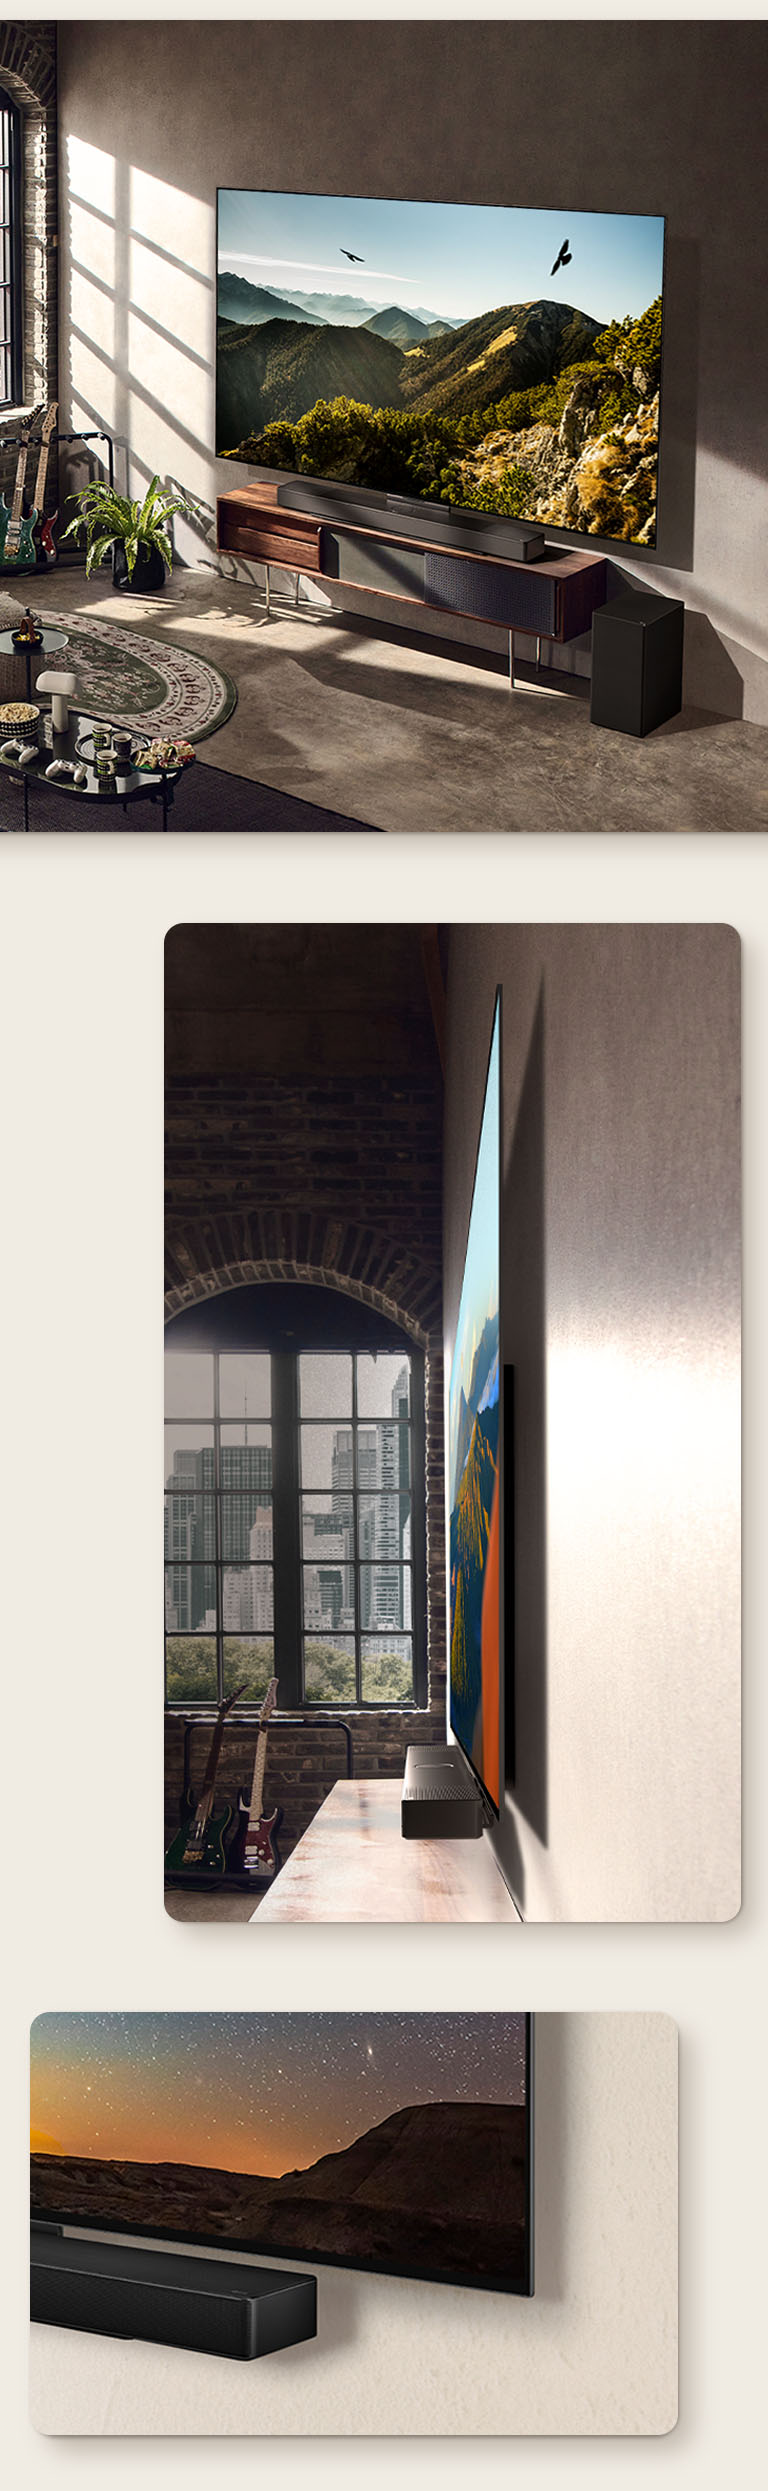 アーティスティックな部屋の壁に取り付けられた LG OLED C3 とサウンドバーの画像。街を眺望する窓を背景とした LG OLED C3 の薄型本体の側面画像。LG OLED C3 の下部コーナーとサウンドバー。